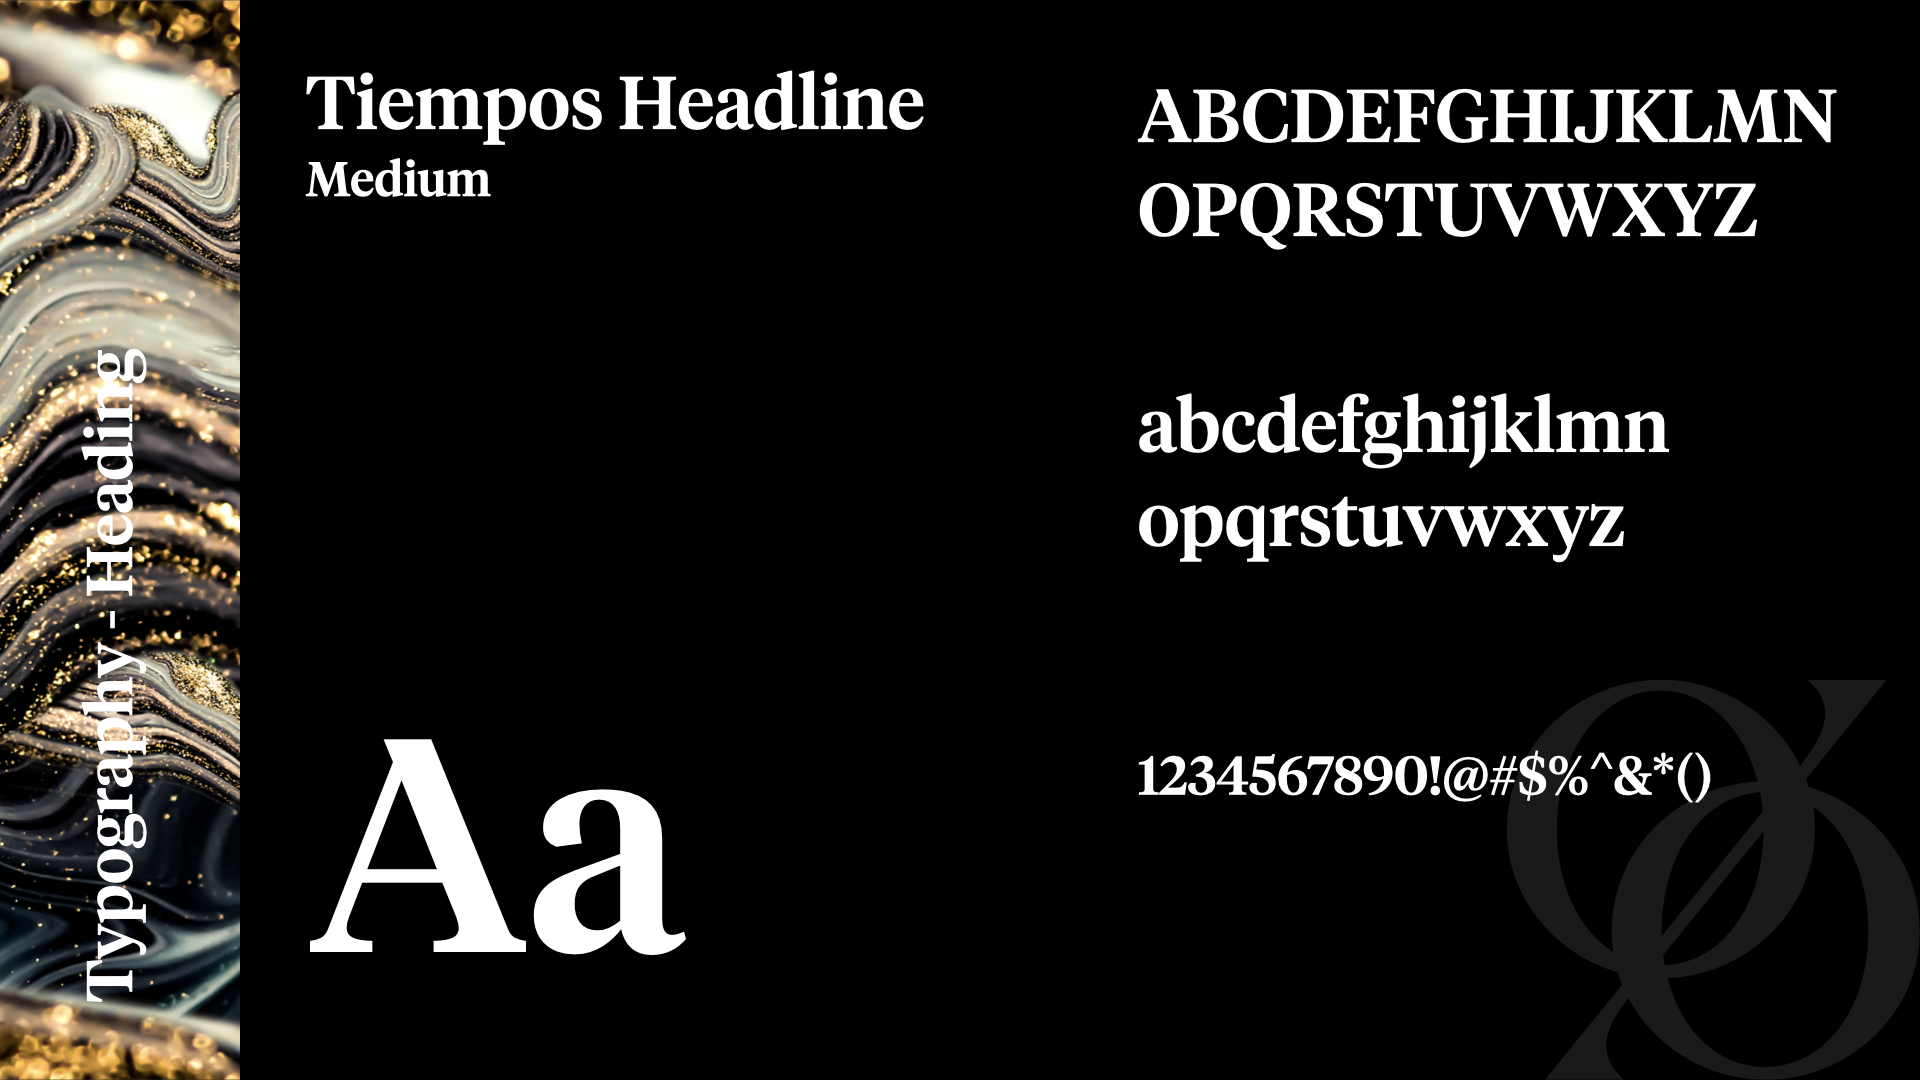 200 percent brand typographic heading